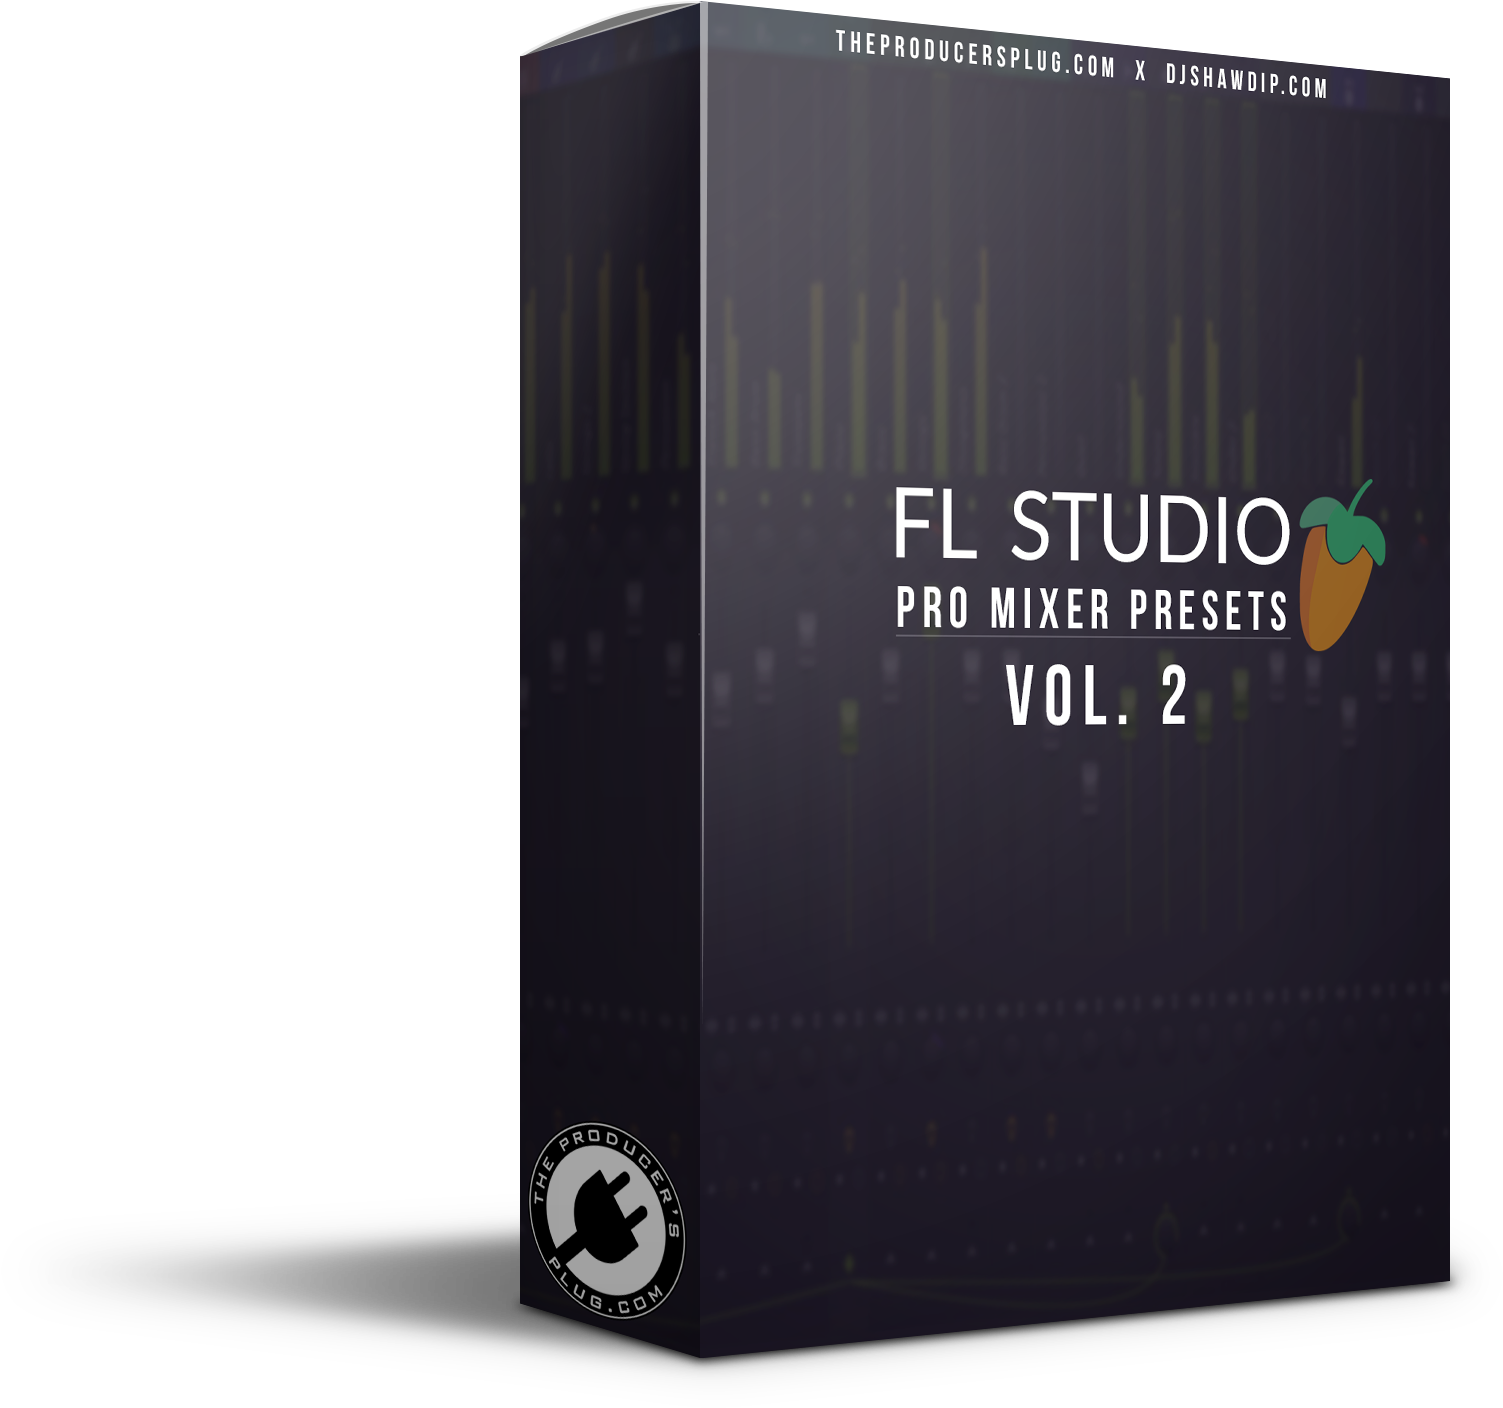 F L Studio Pro Mixer Presets Vol2 Box PNG image